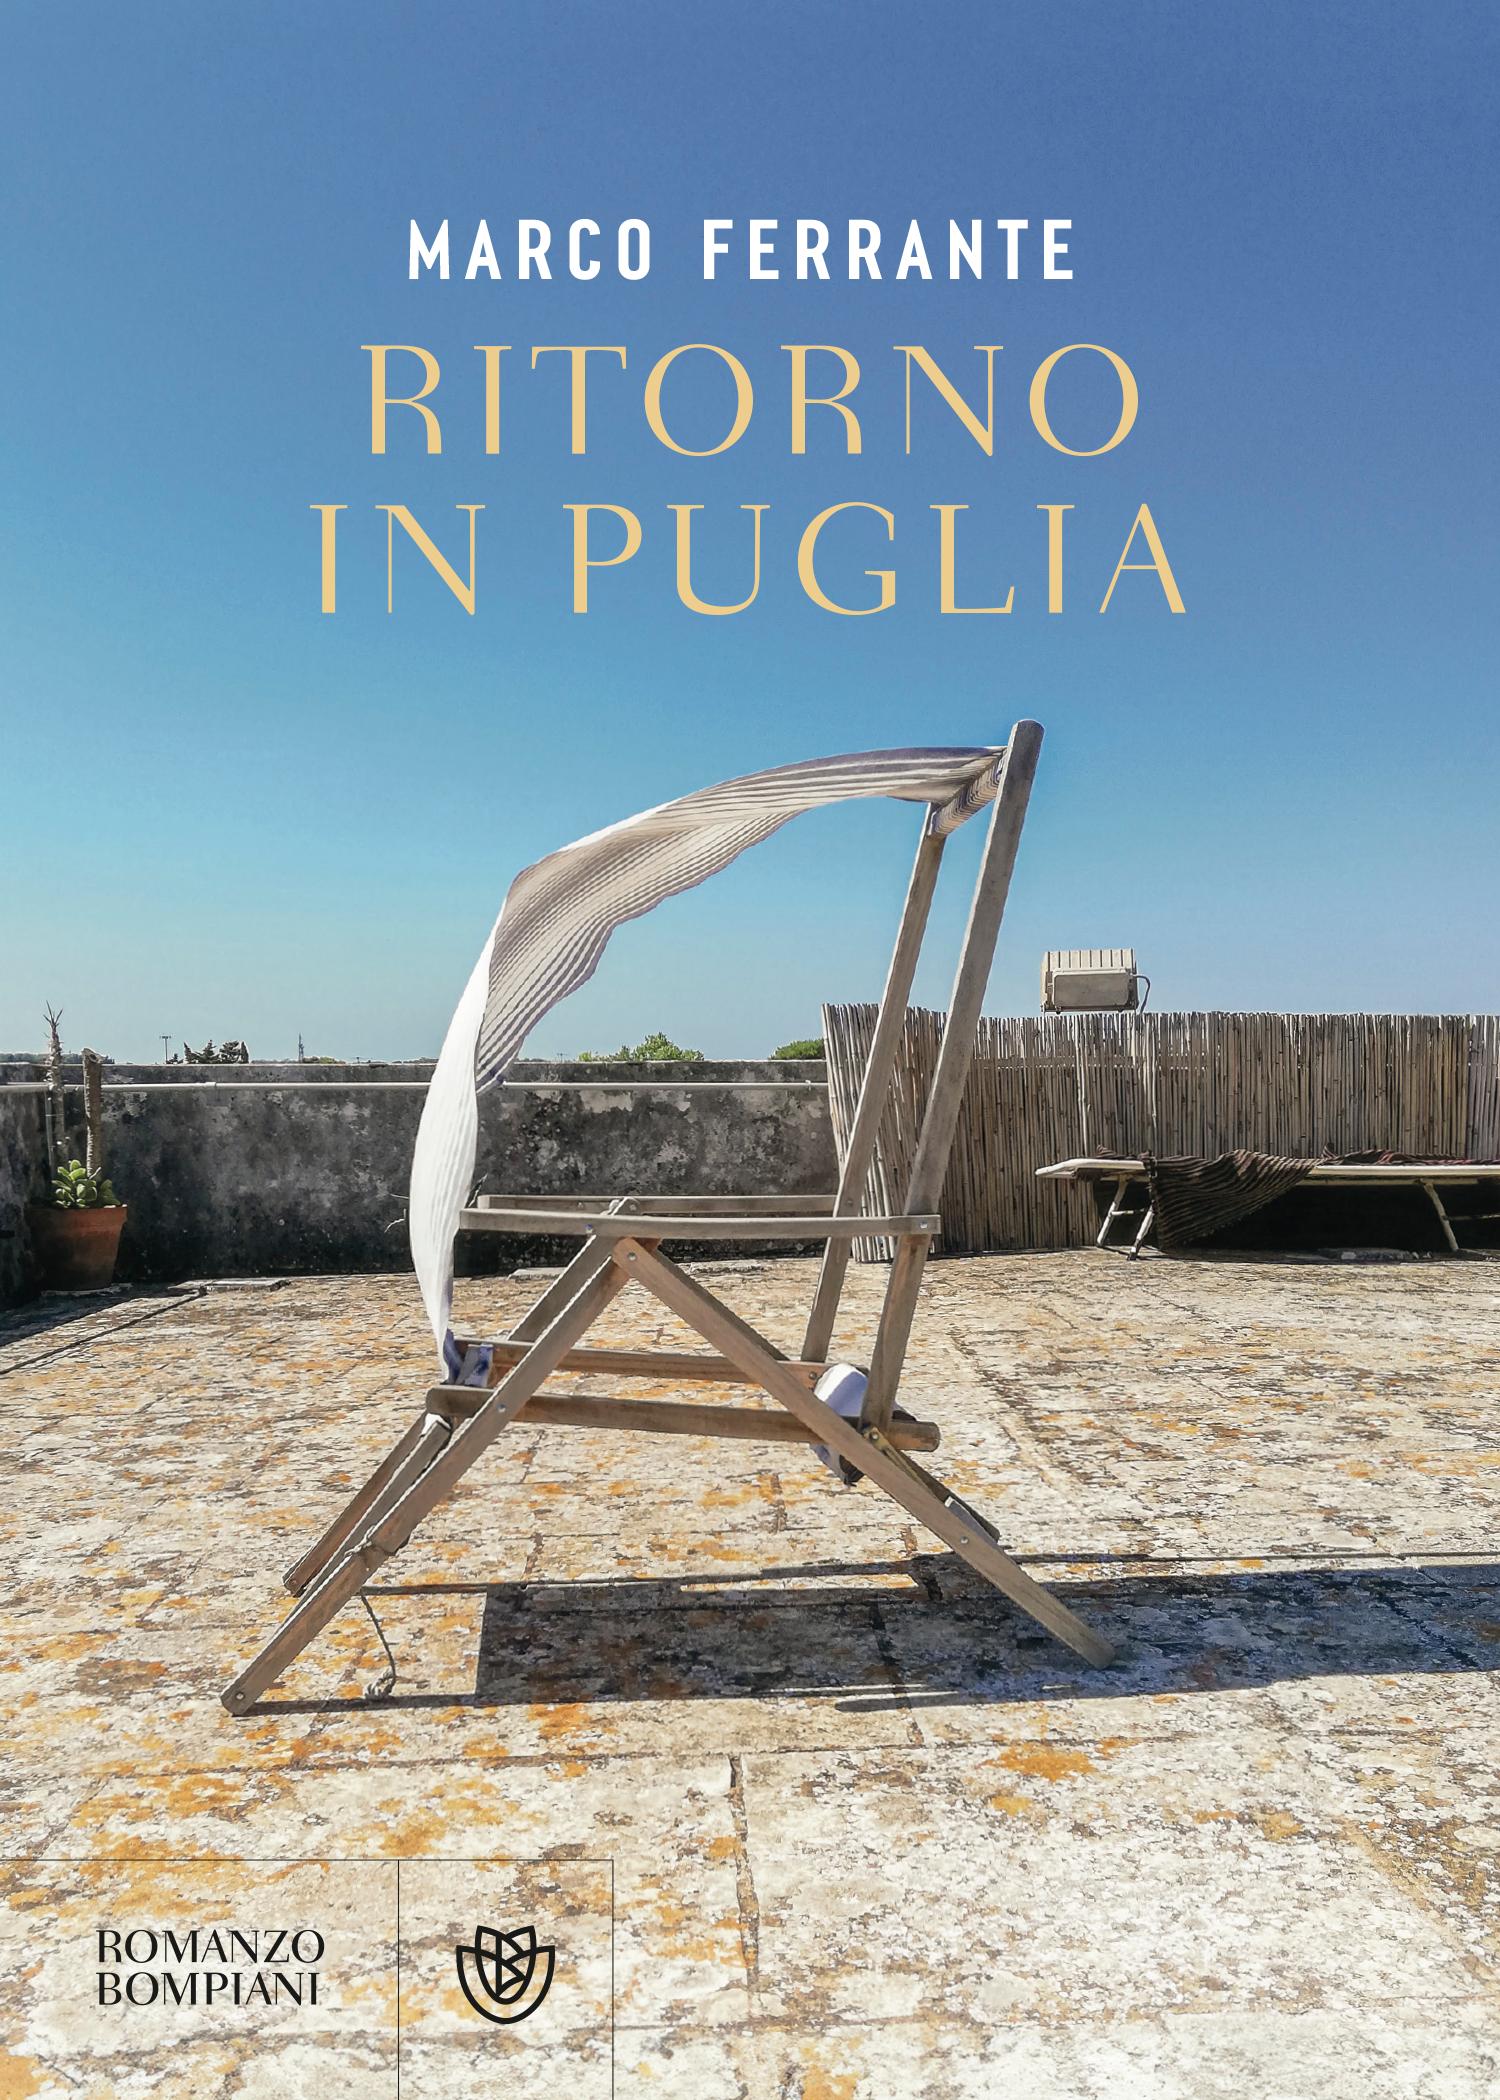 Ritorno in Puglia: Marco Ferrante presenta il suo ultimo romanzo